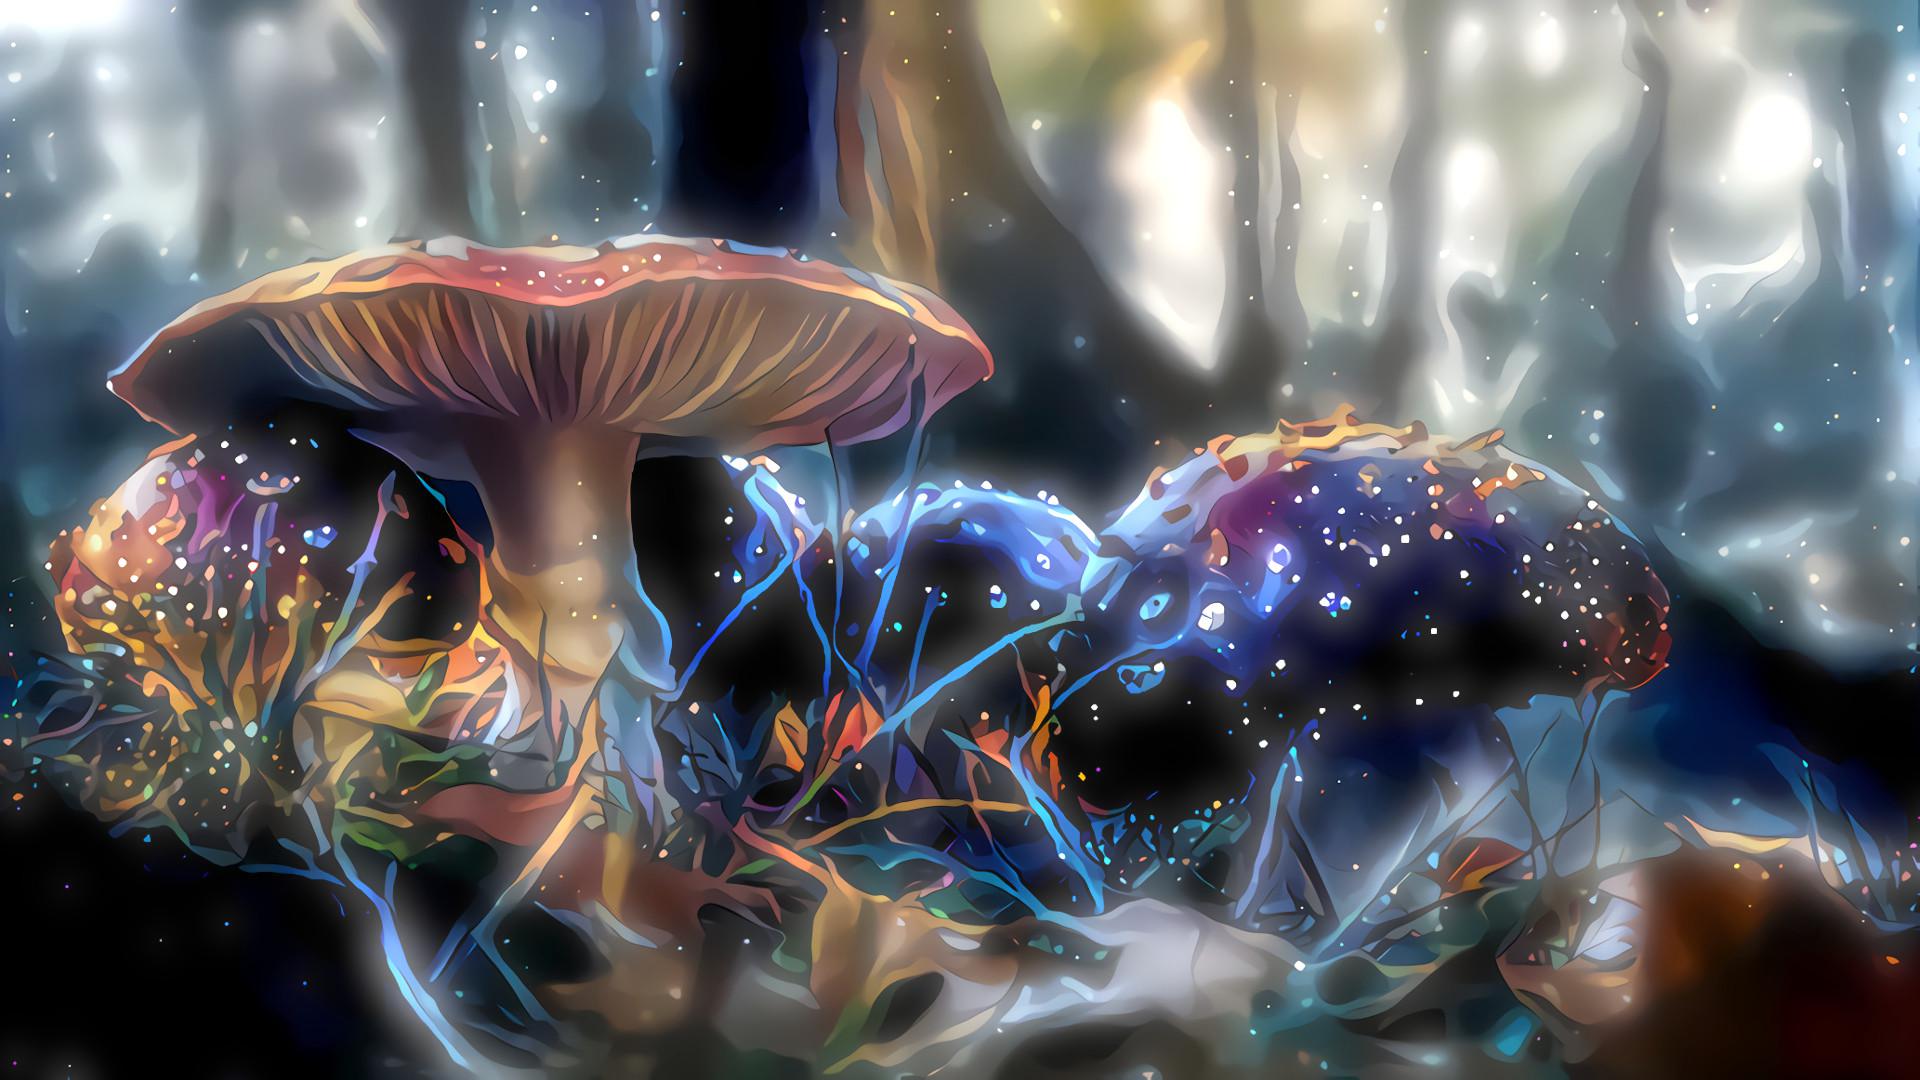 Magic Mushrooms 1080P 2K 4K 5K HD wallpapers free download  Wallpaper  Flare